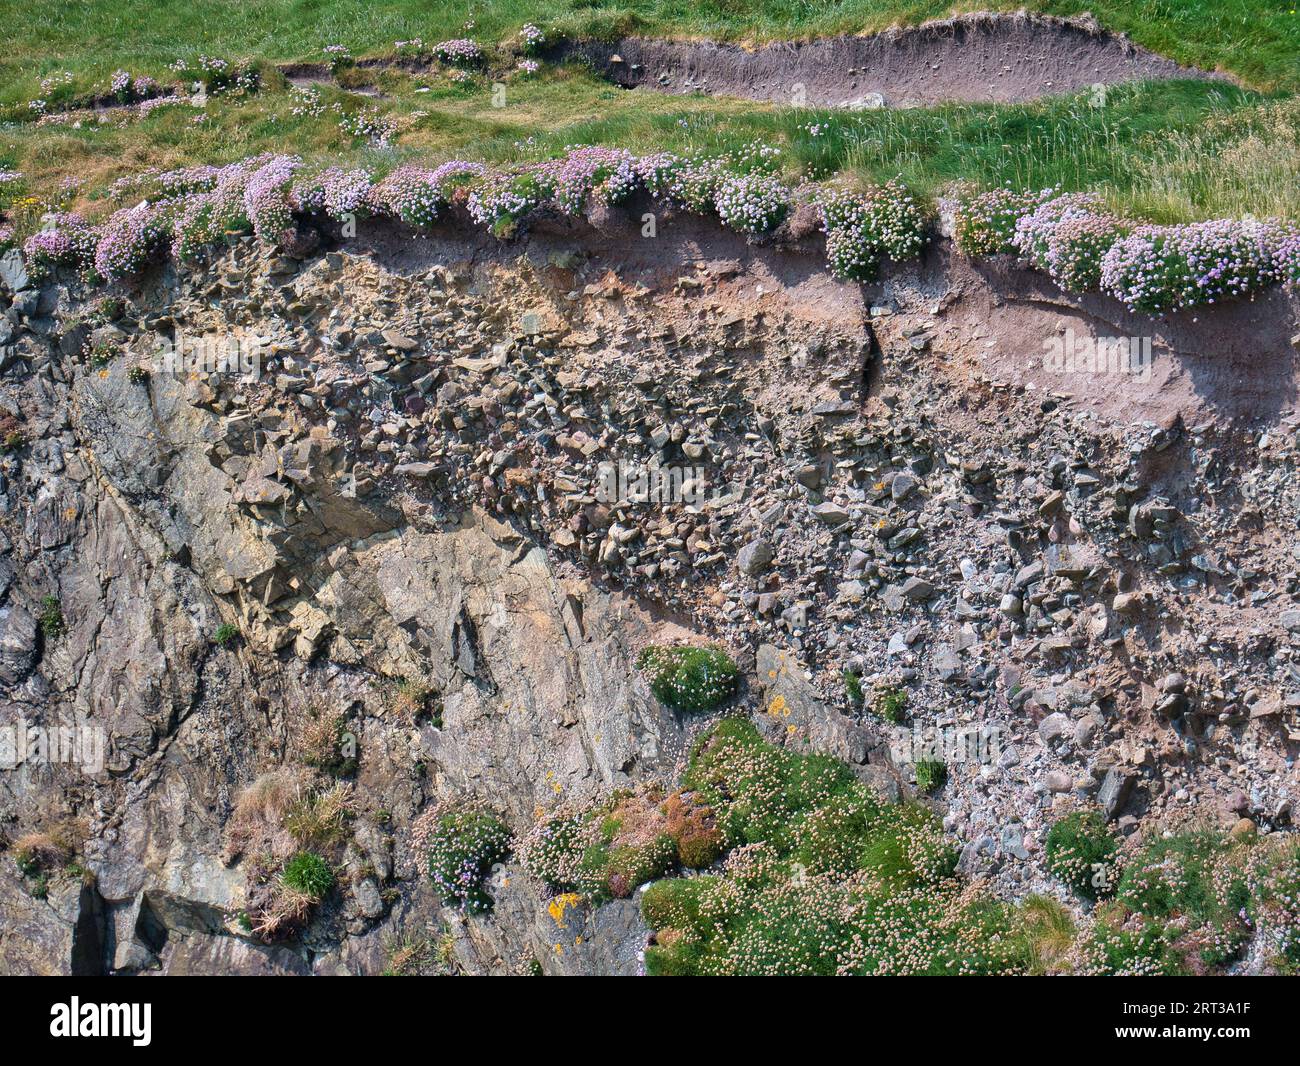 Strati rocciosi esposti nelle scogliere costiere sulla costa rocciosa e aspra dell'Atlantico dell'Isola di Lewis nelle Ebridi esterne, Scozia, Regno Unito. Preso da un sole Foto Stock